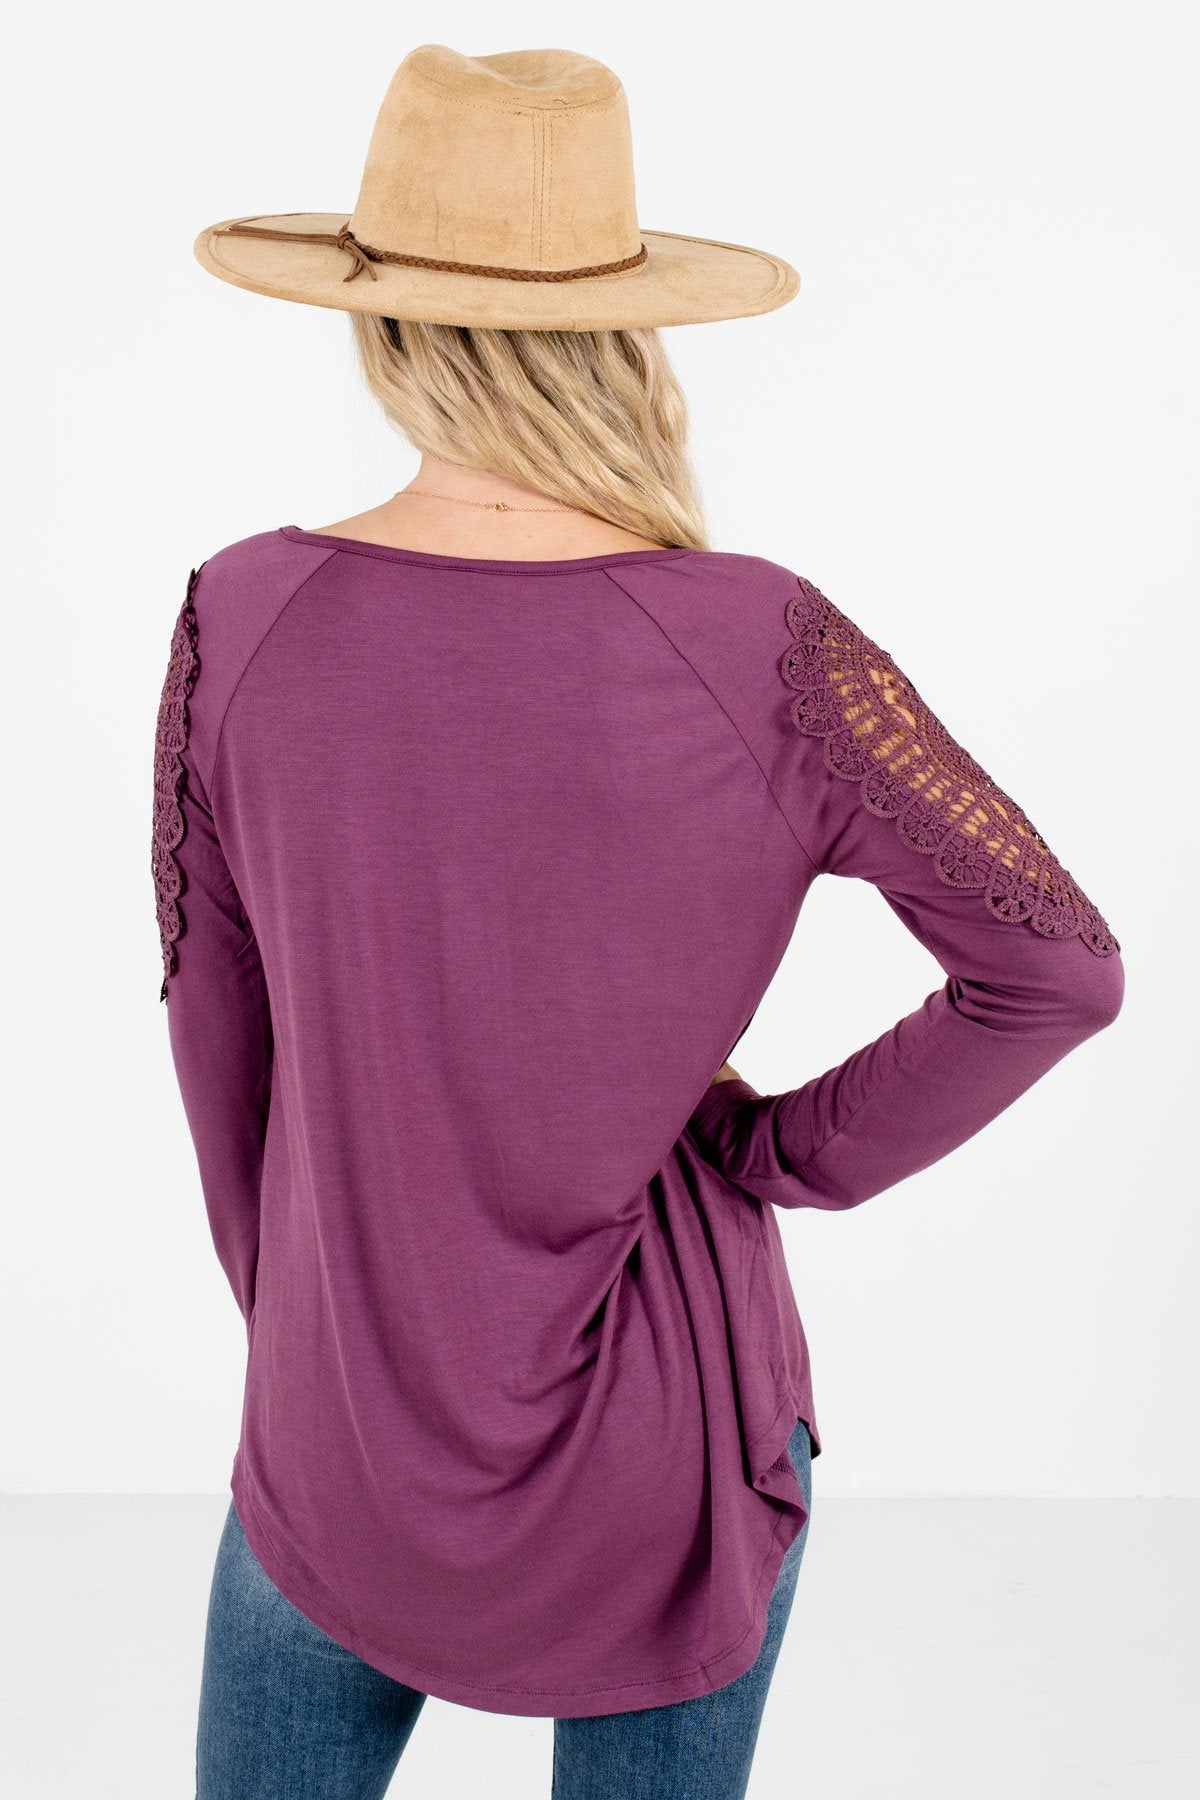 Women’s Purple Button-Up Neckline Boutique Tops